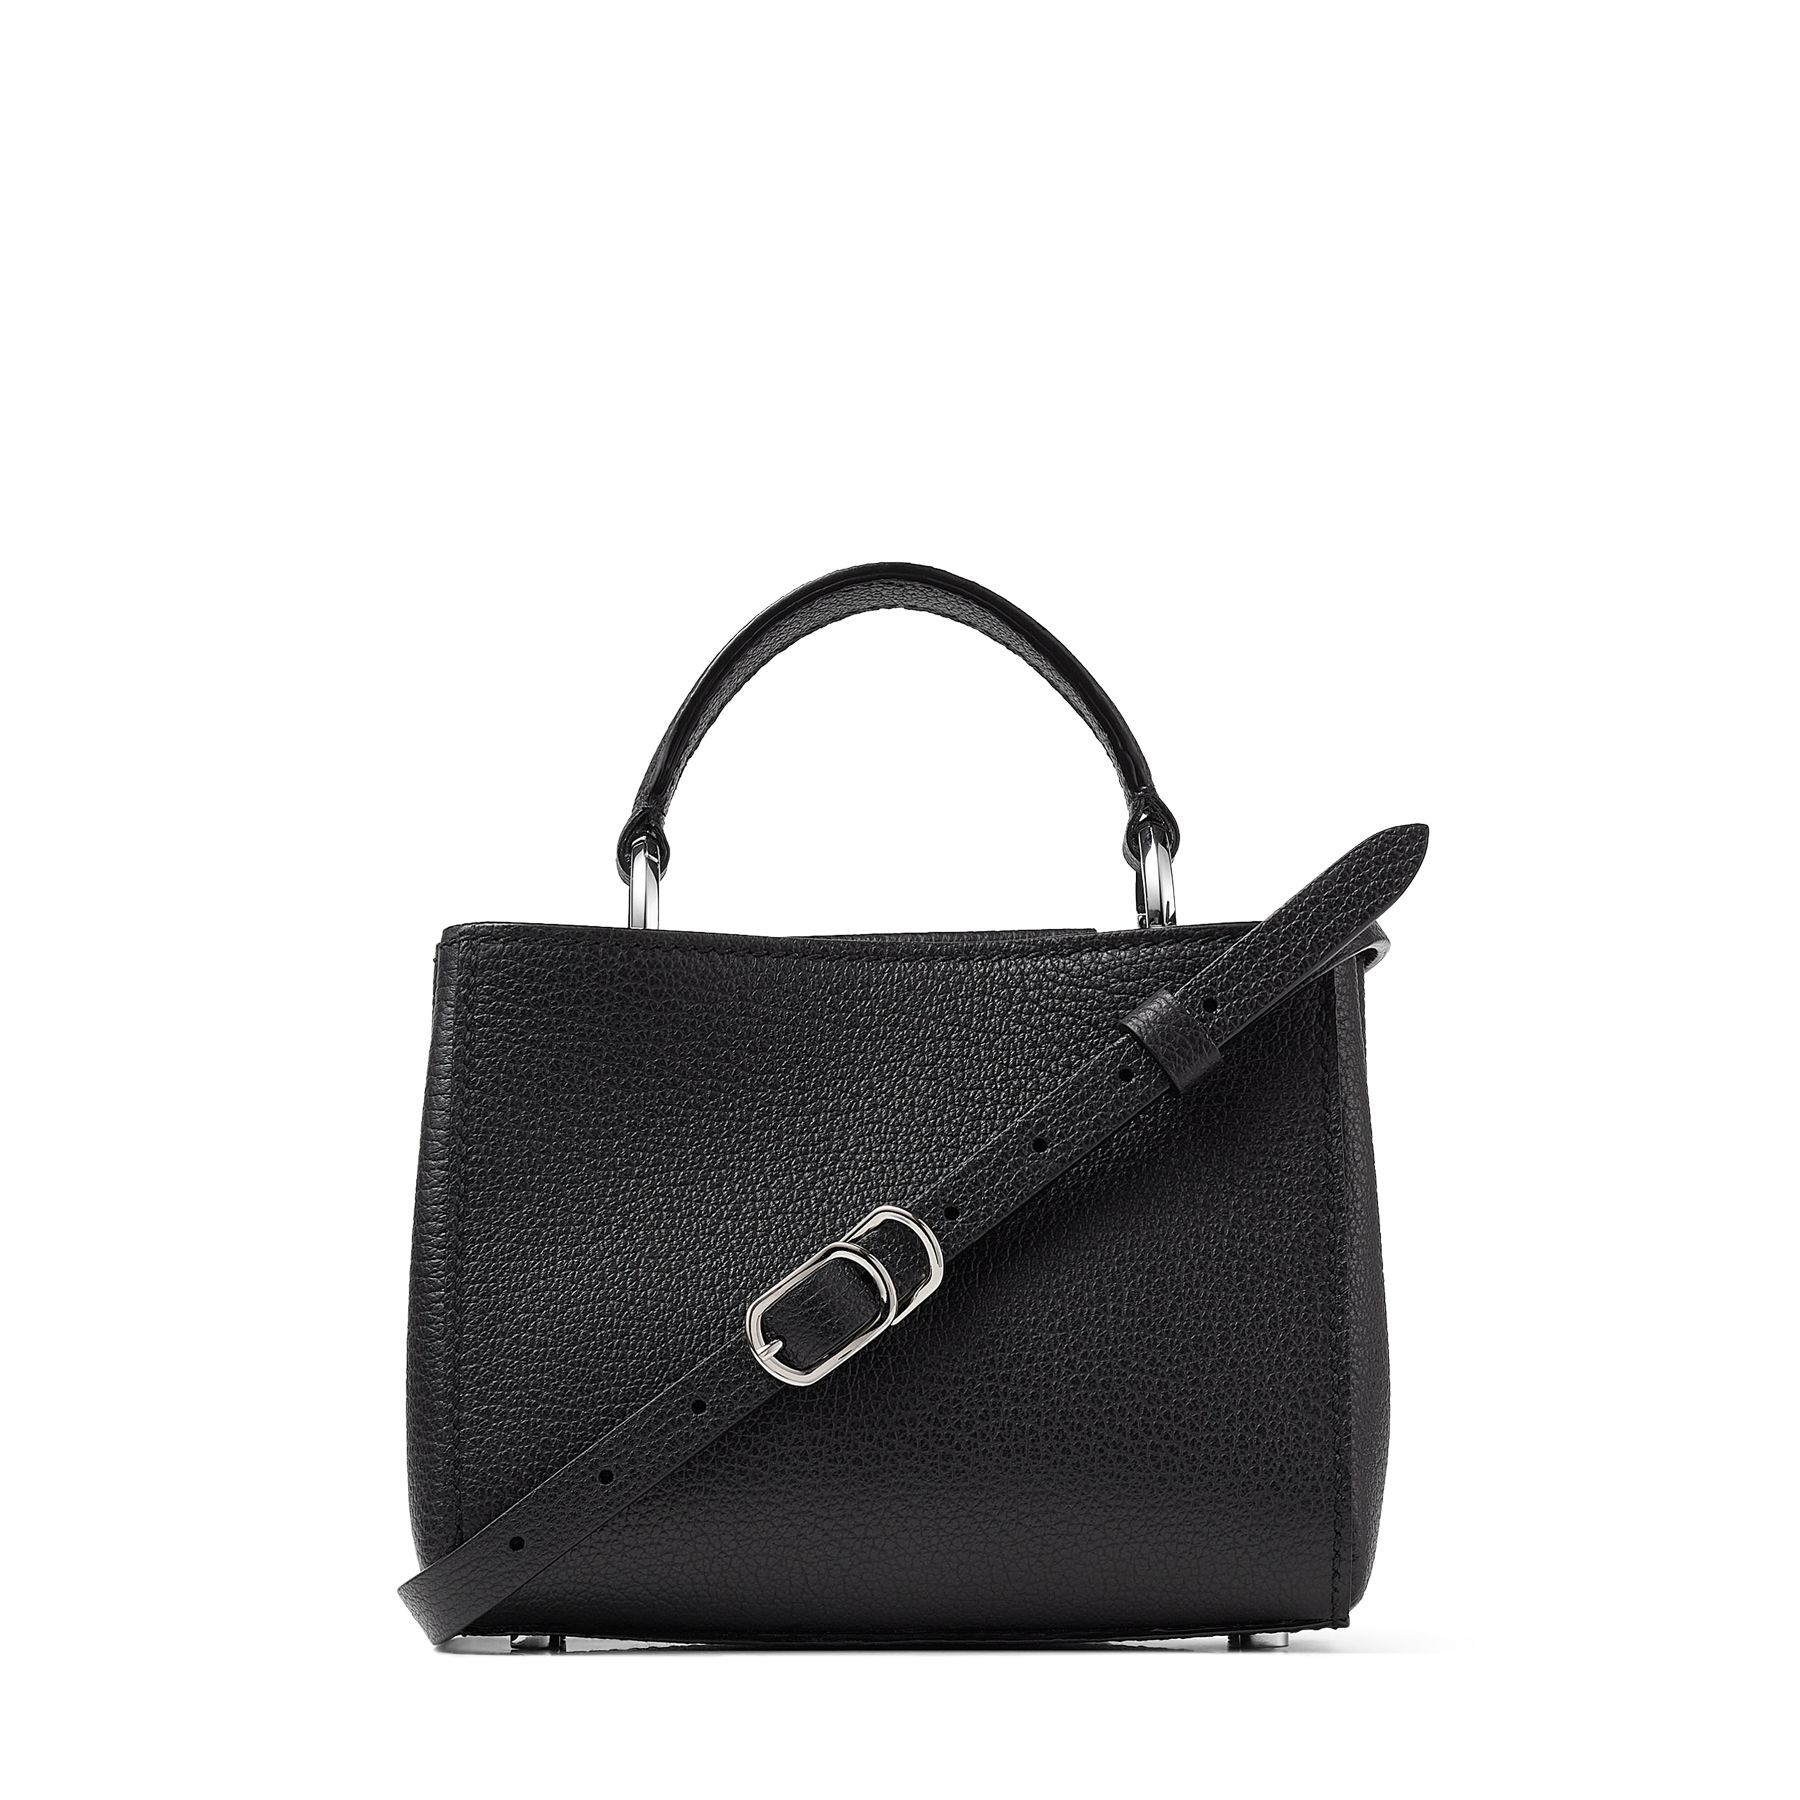 Black City Grainy Calf Leather Mini Handbag | VARENNE TOPHNDL MINI ...